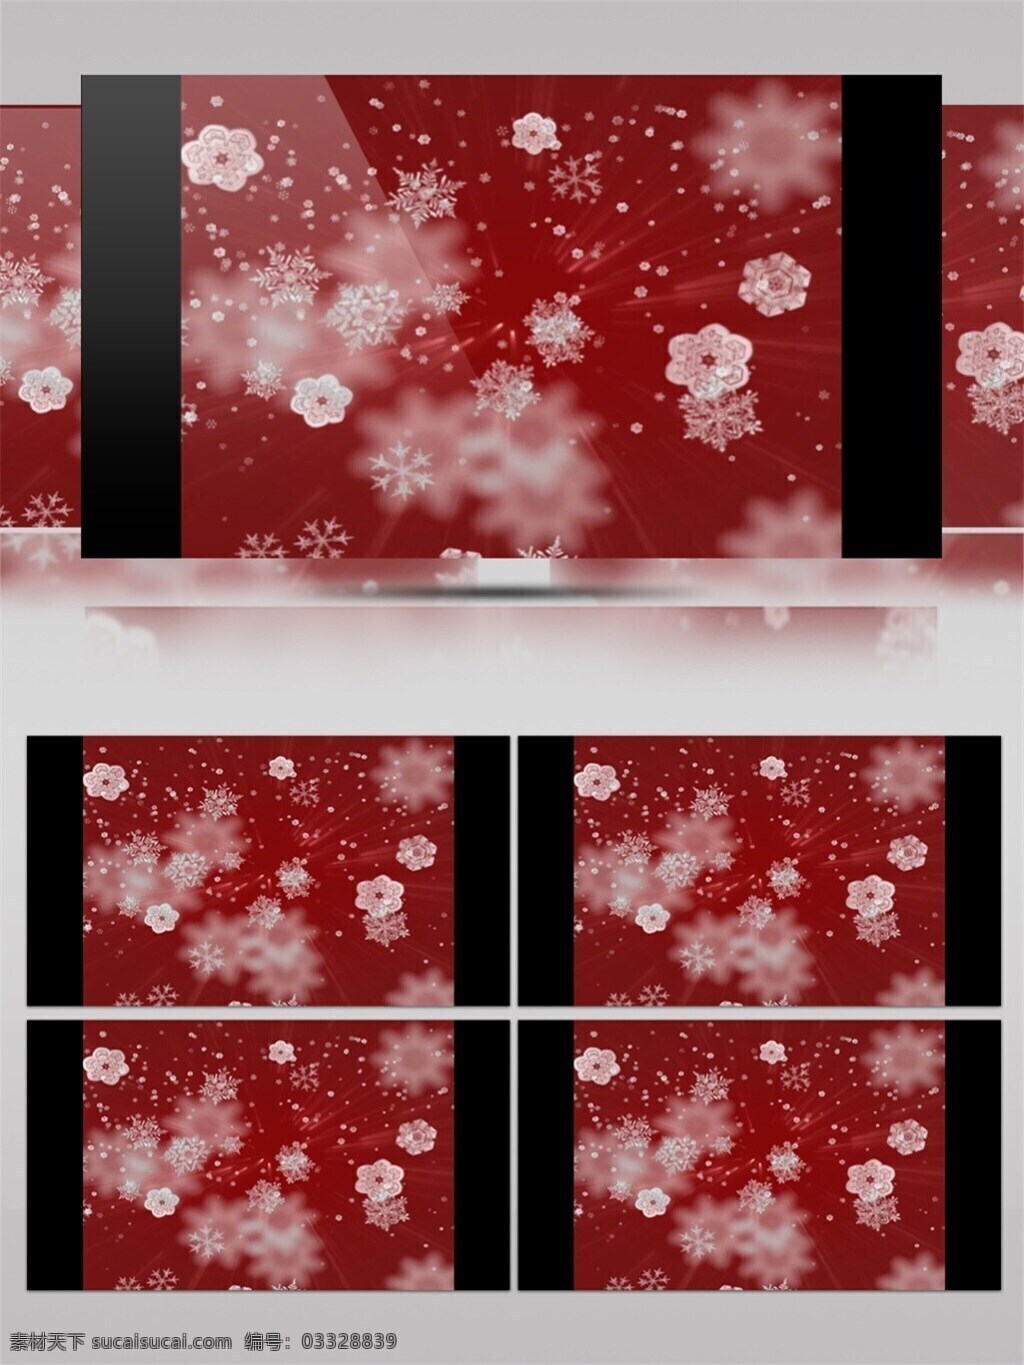 白色 雪花 圣诞节 视频 高质量 背景 好看背景素材 红色背景 美景动态背景 美丽壁纸 雪花形状